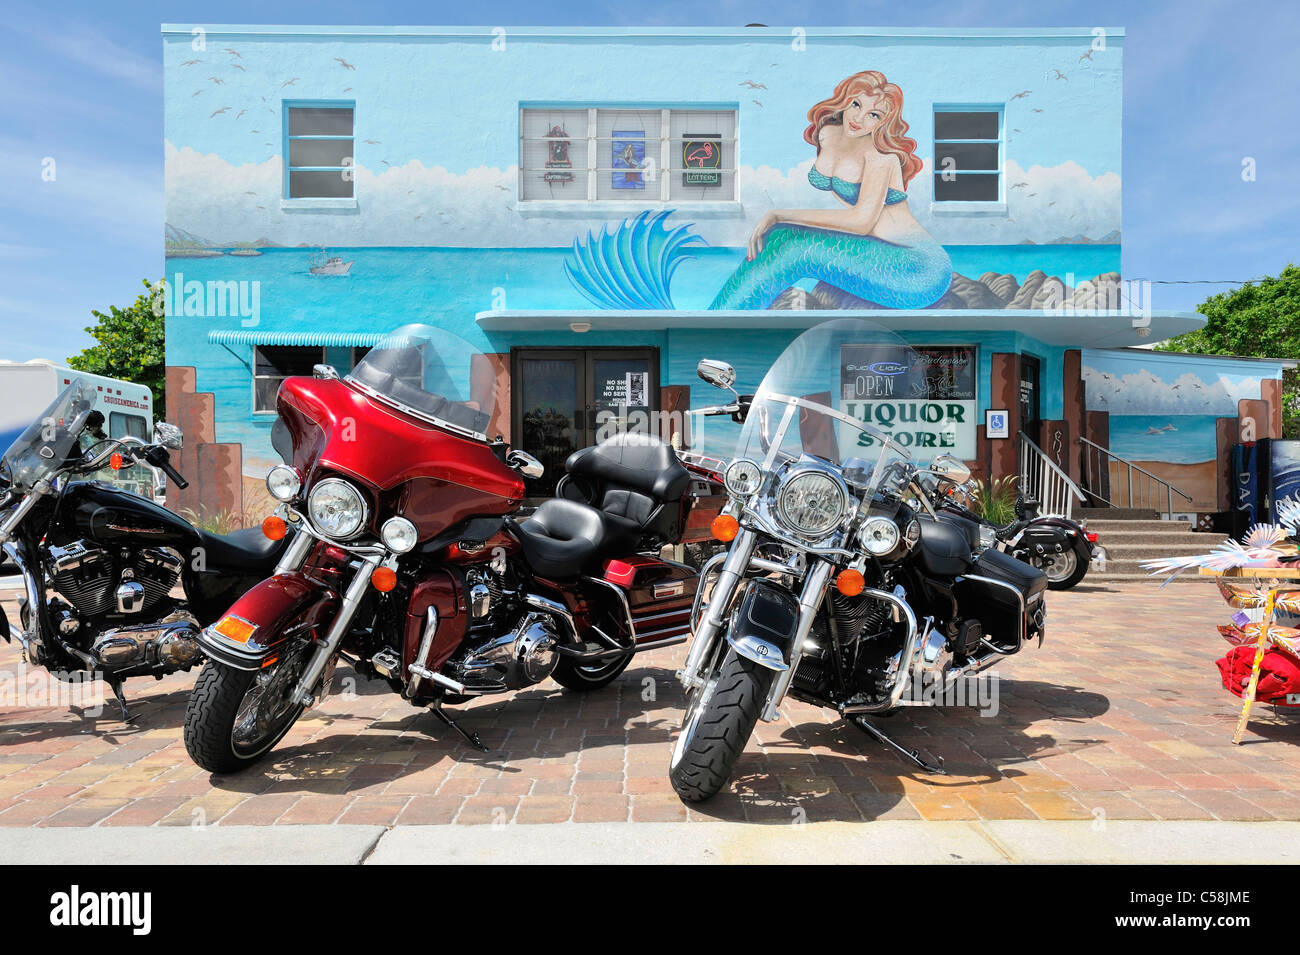 Motorbikes, Liquor Store, Mermaid, Mural, Fort Myers Beach, Florida, USA, United States, America, bikes Stock Photo